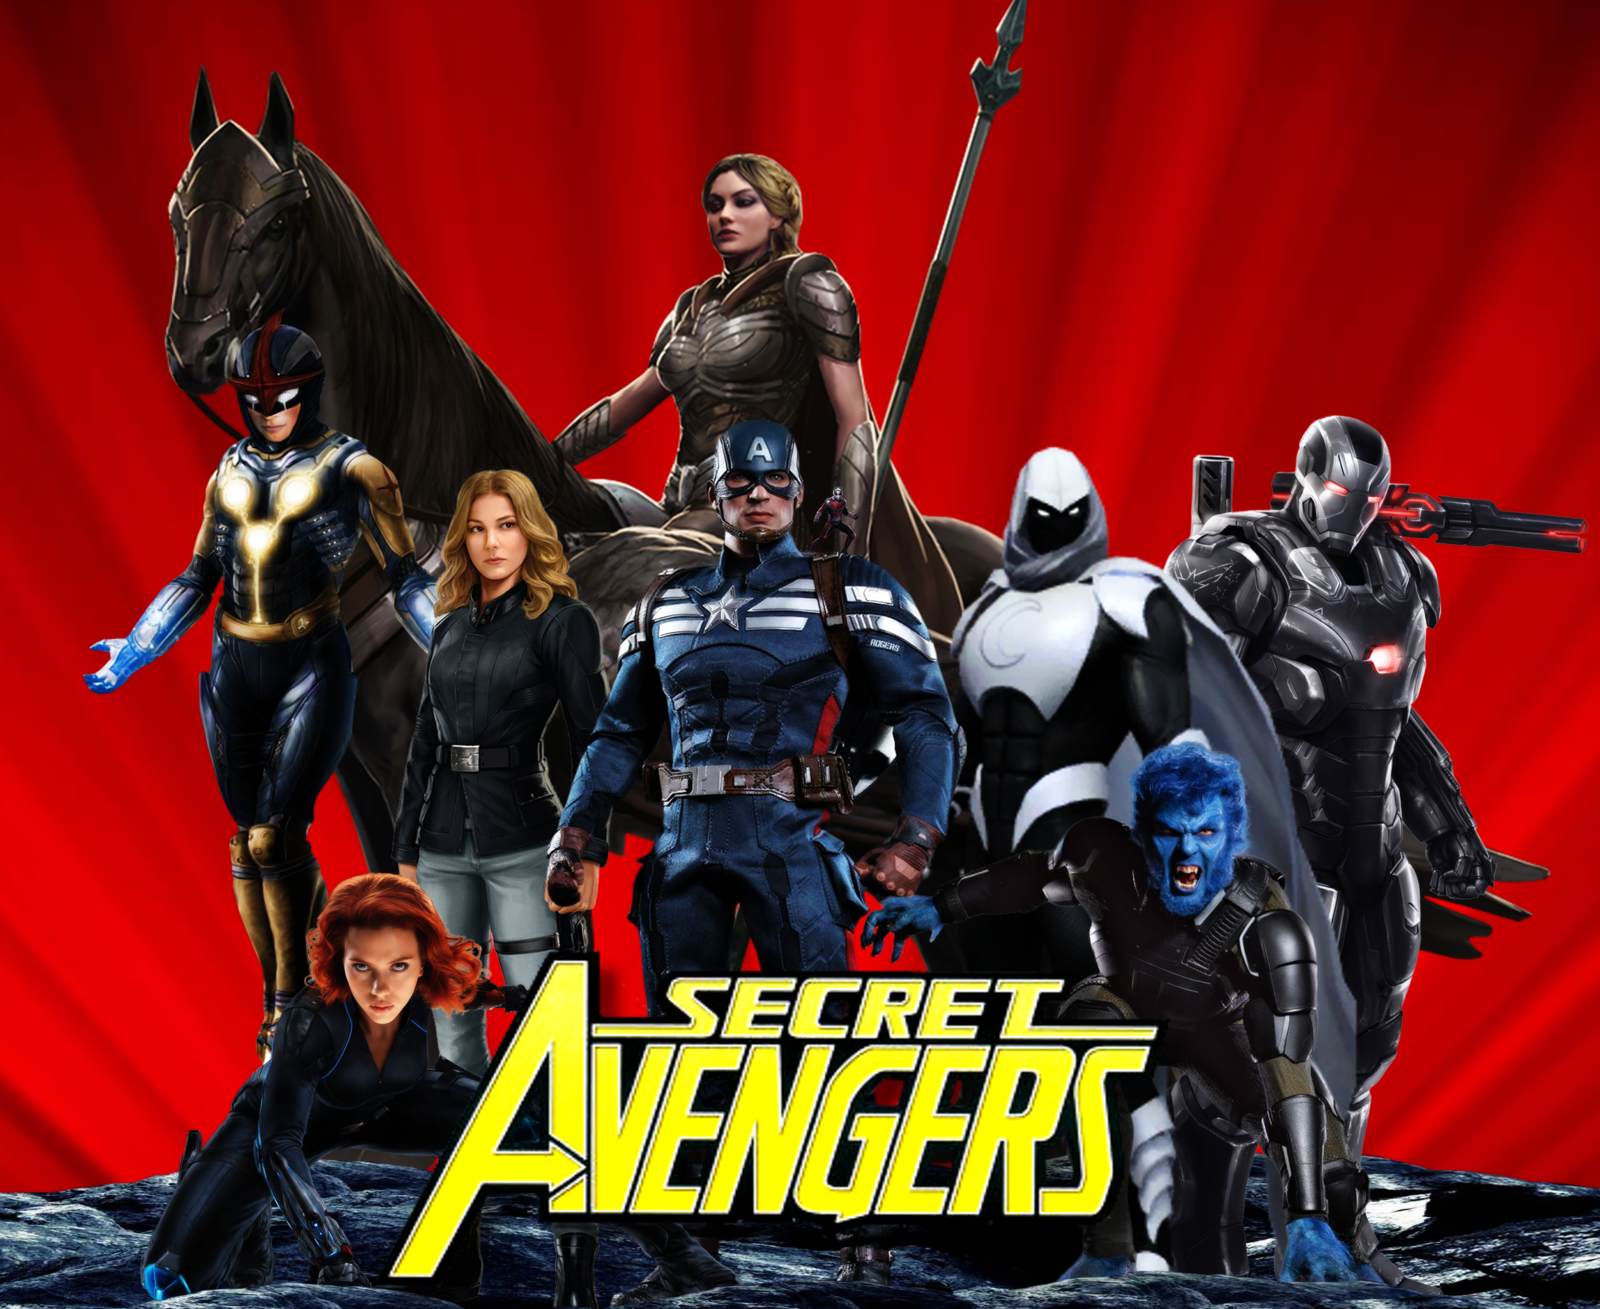 Secret Avengers Backgrounds, Compatible - PC, Mobile, Gadgets| 1600x1309 px